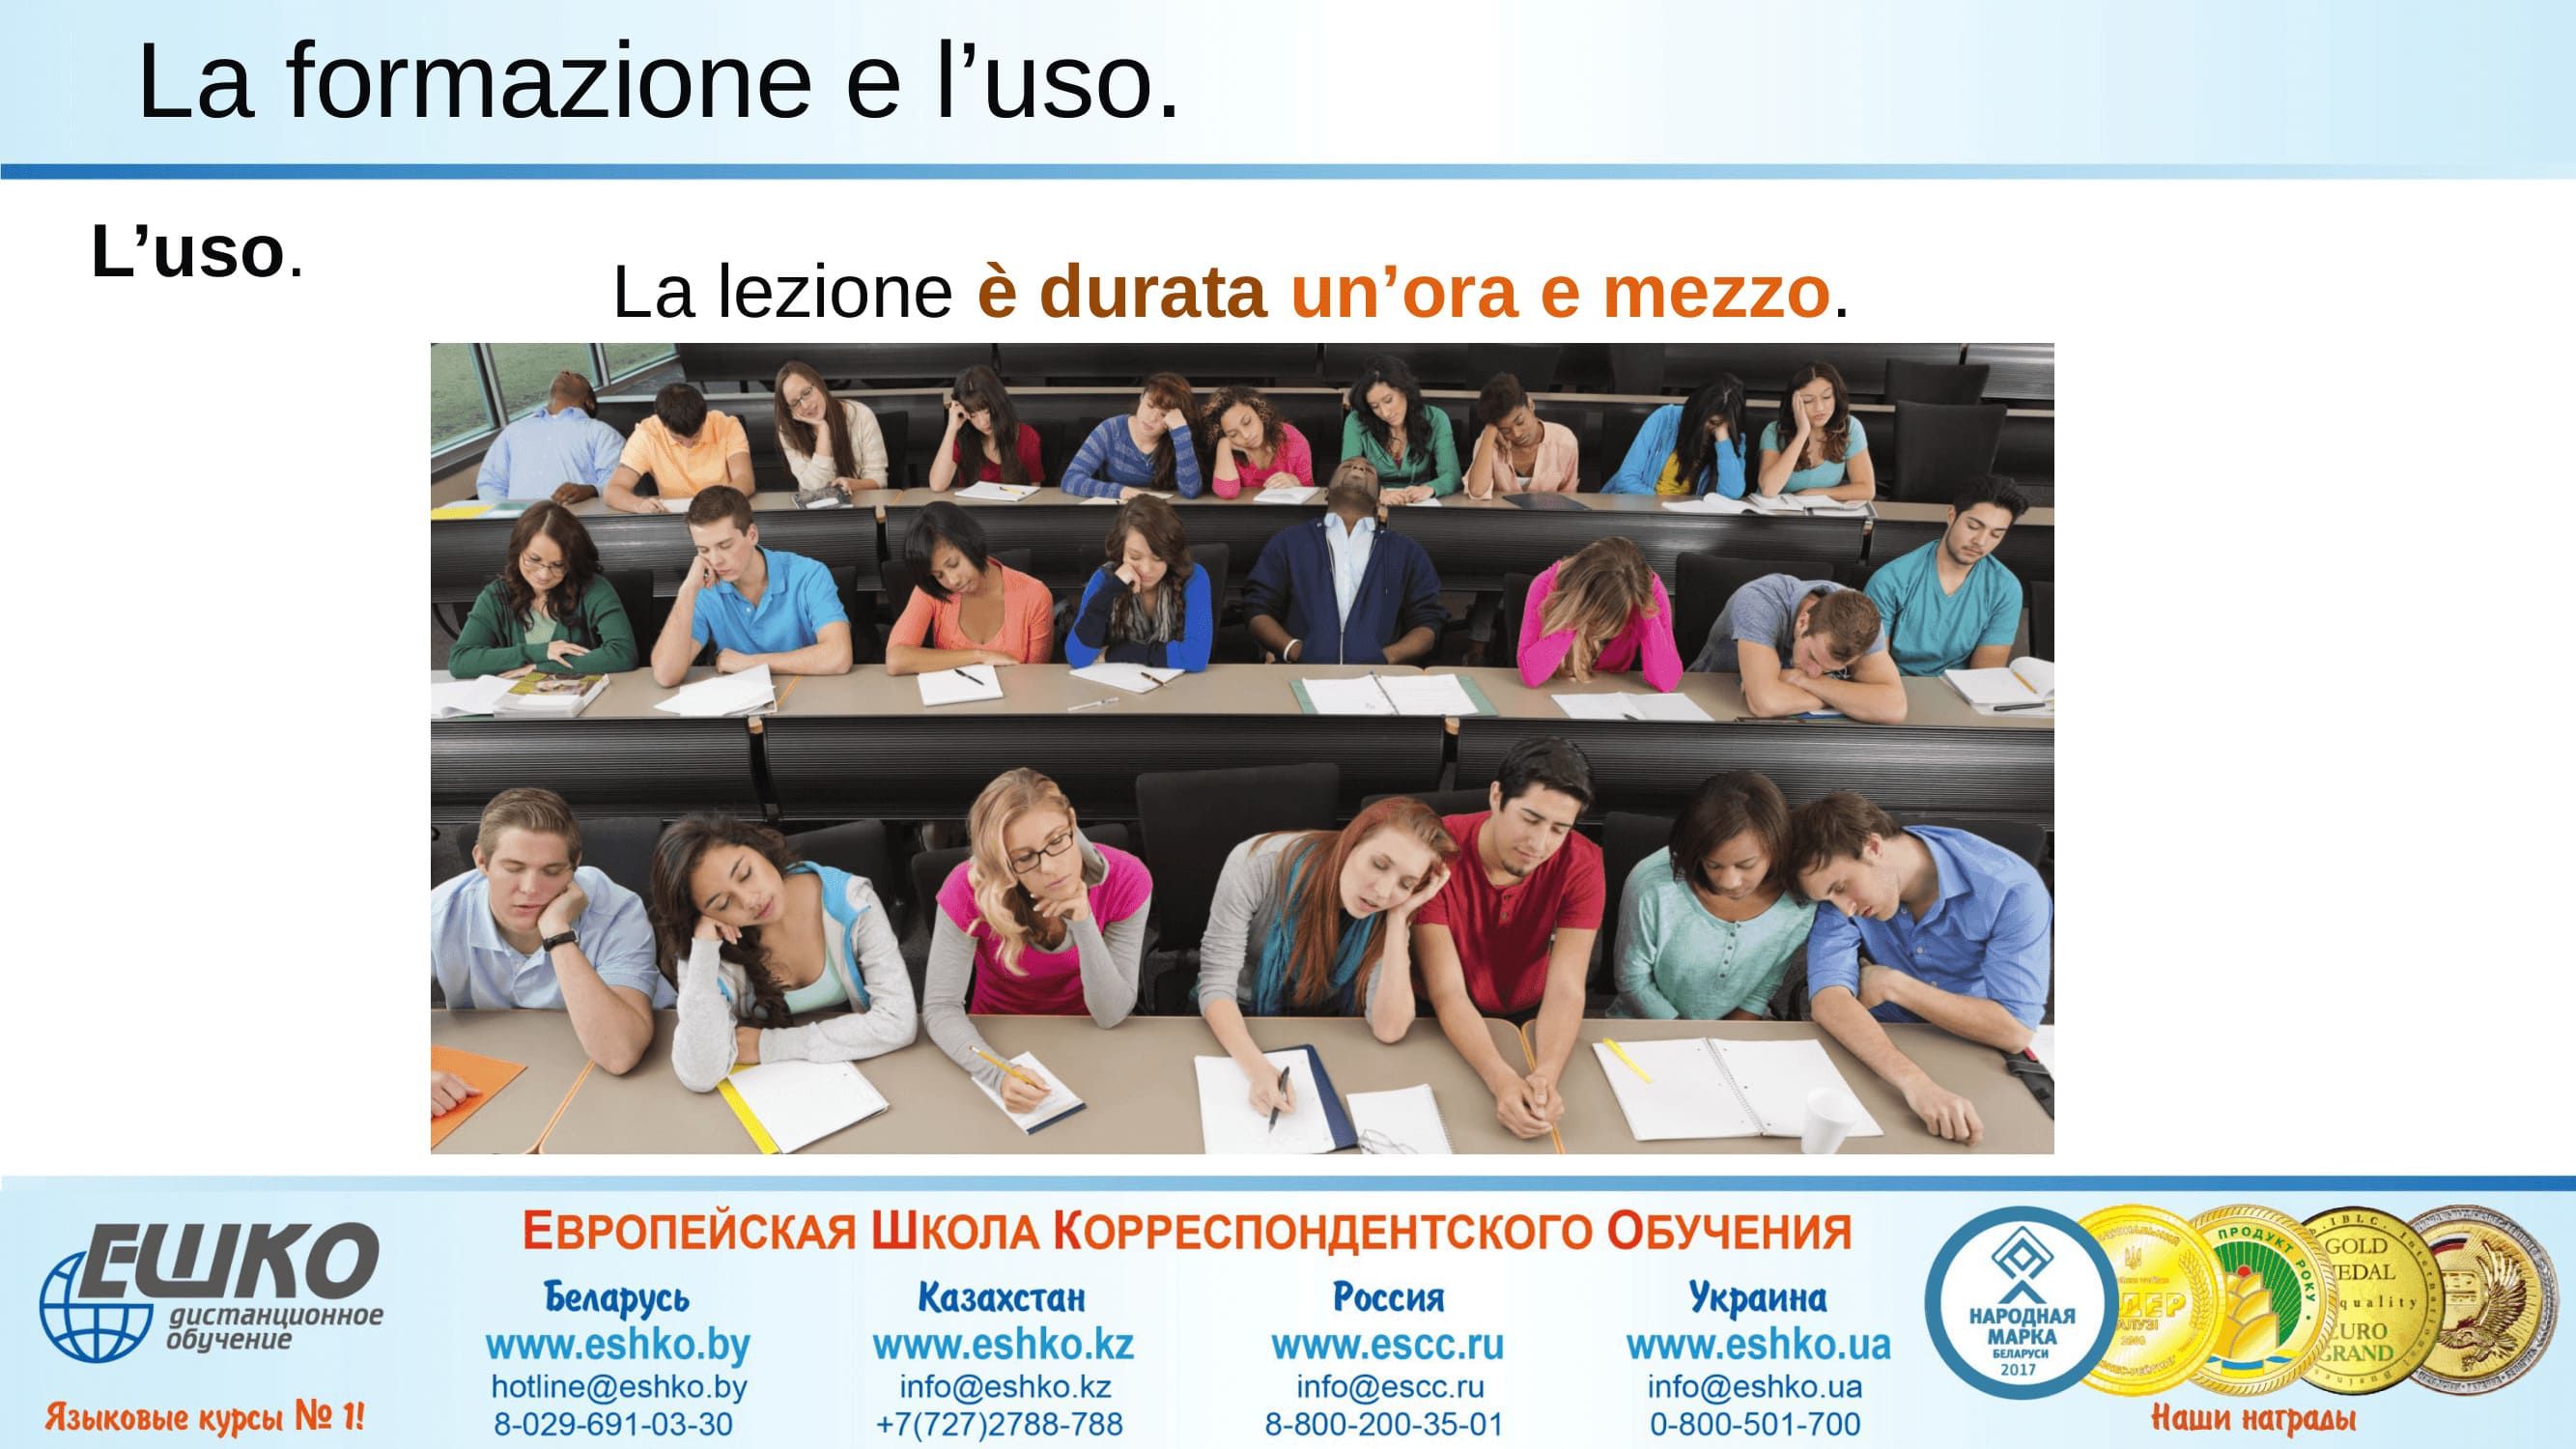 Образование и использование прошедшего сложного времени в итальянском языке.